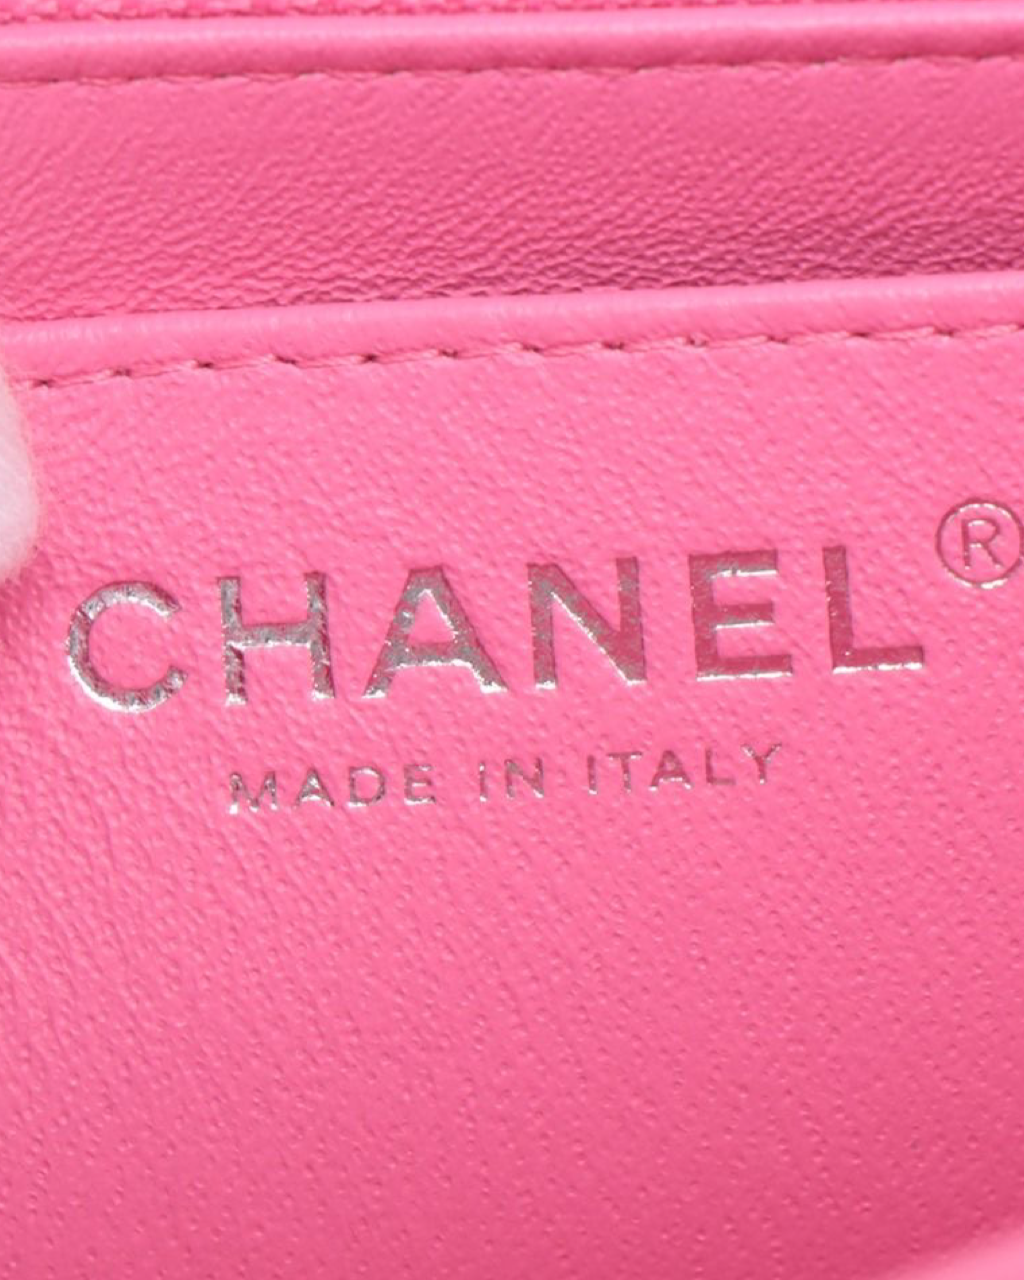 Chanel Mini Classic Flap Bag